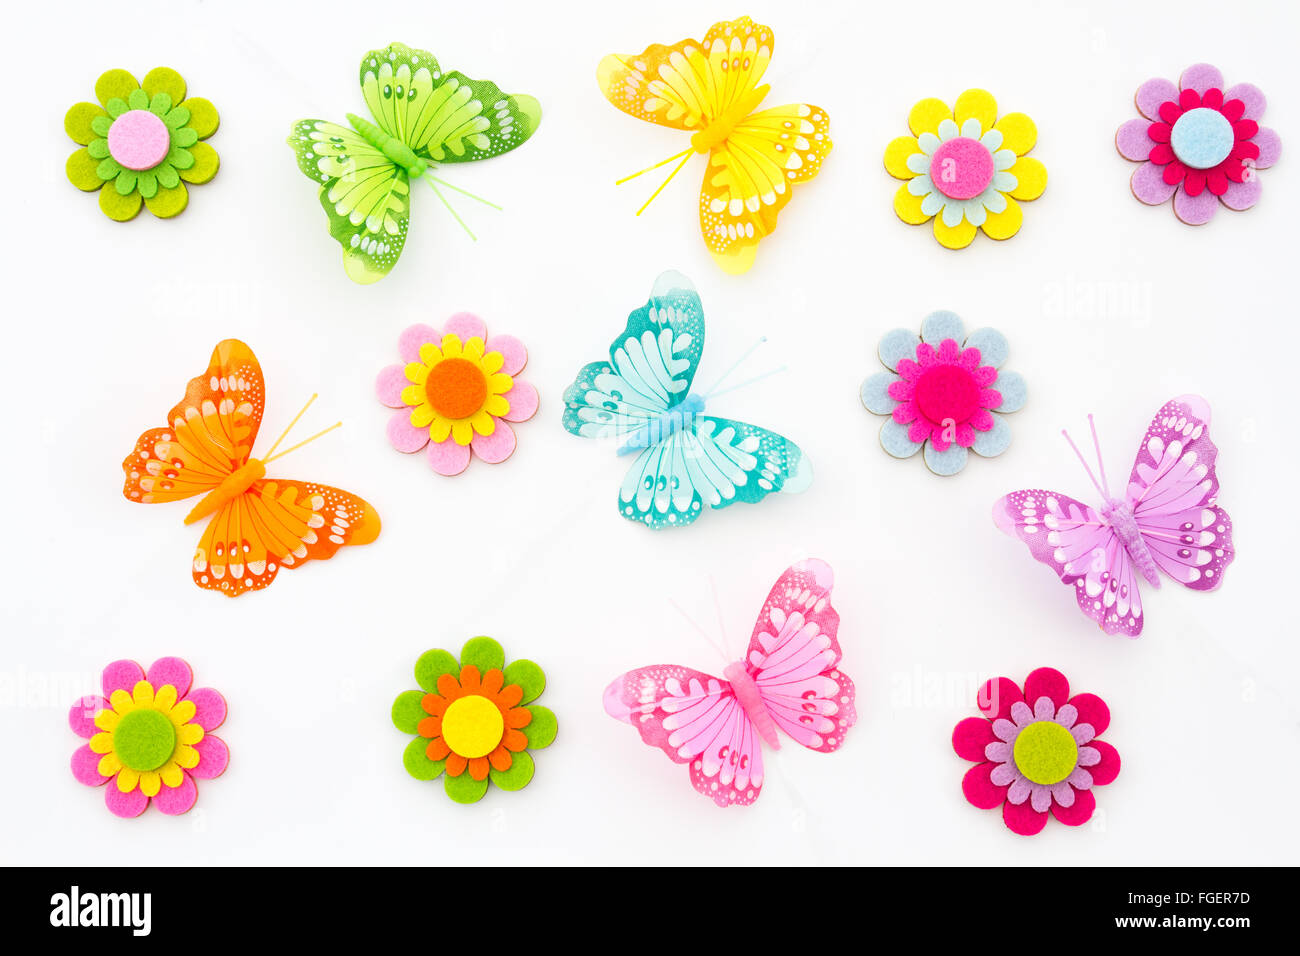 Un fond de printemps fleurs bijou artisanal et papillons. un art et d'artisanat de l'affichage des articles. Banque D'Images